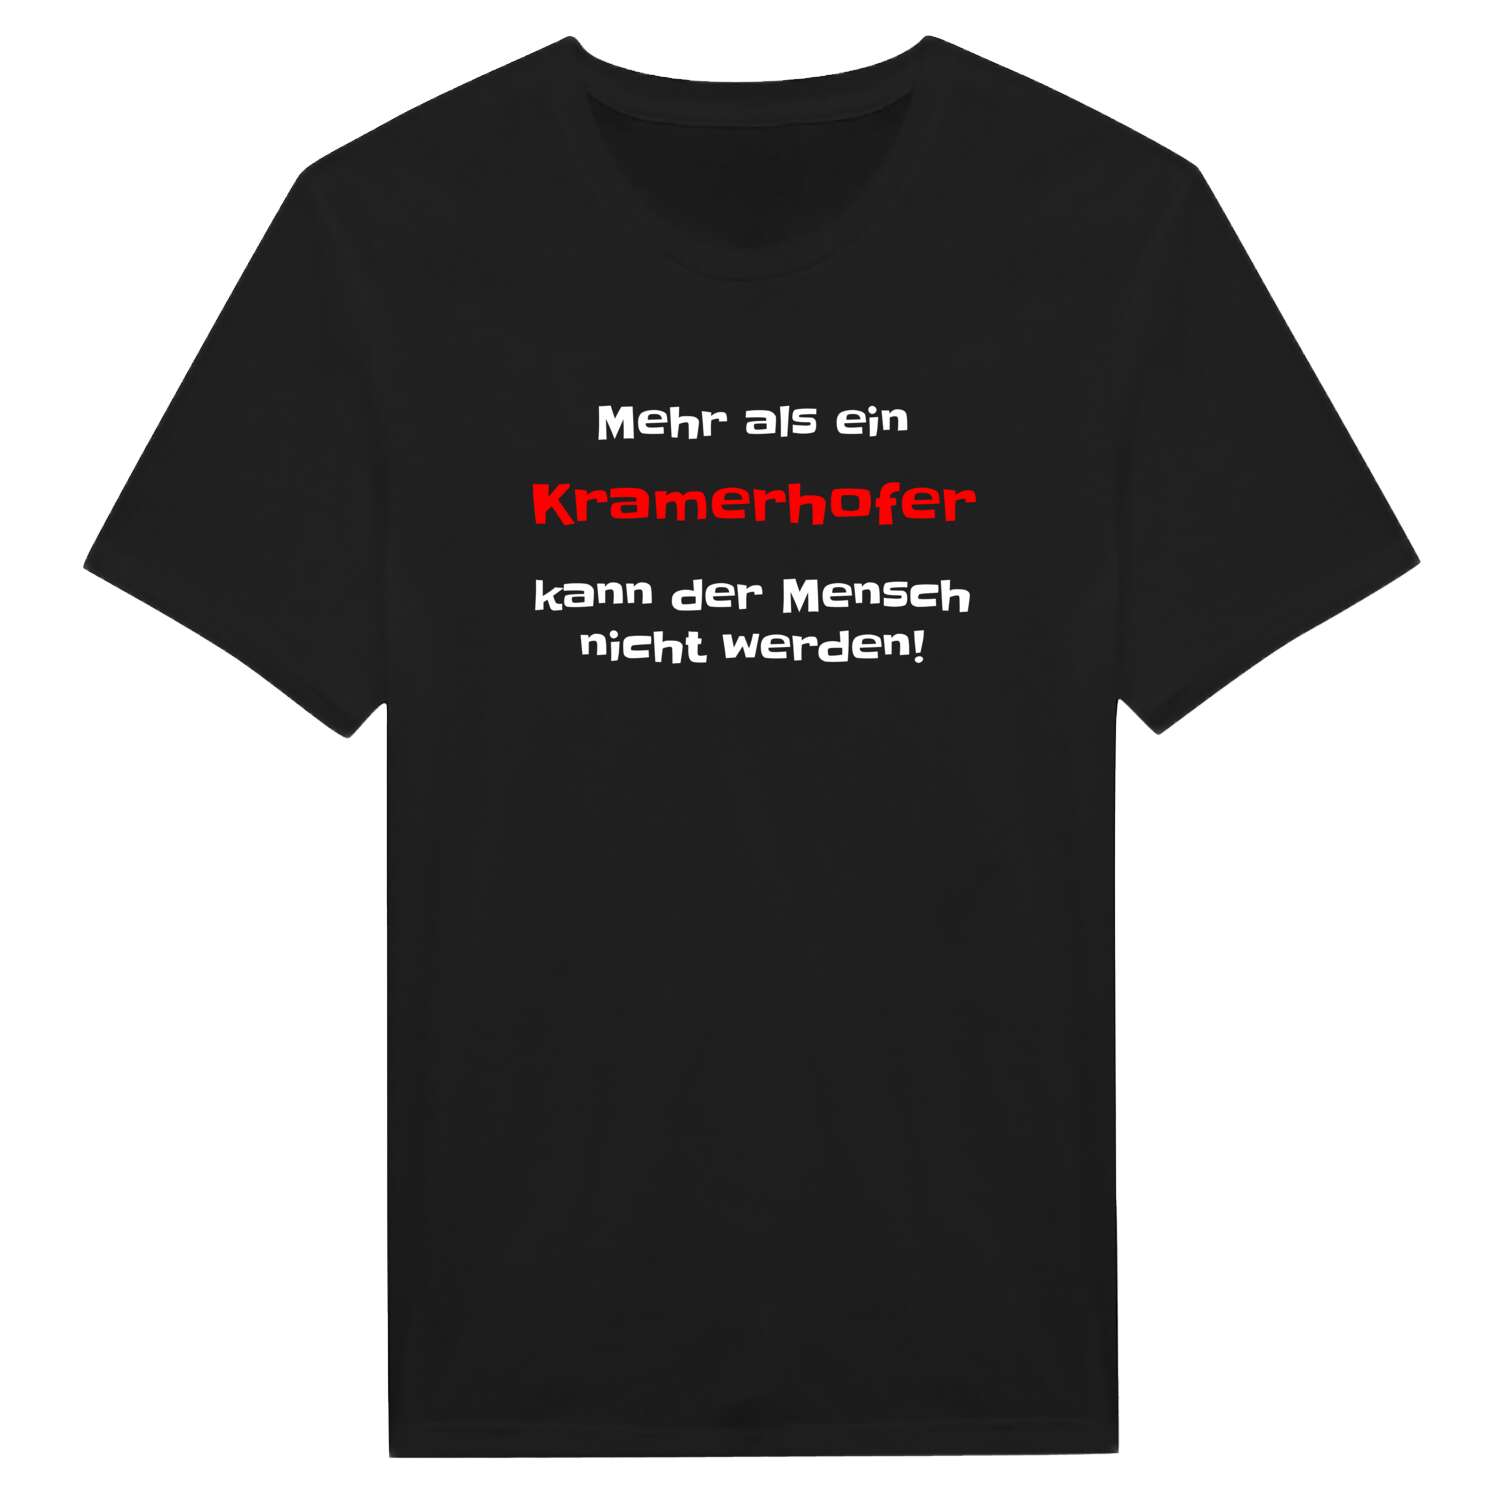 Kramerhof T-Shirt »Mehr als ein«